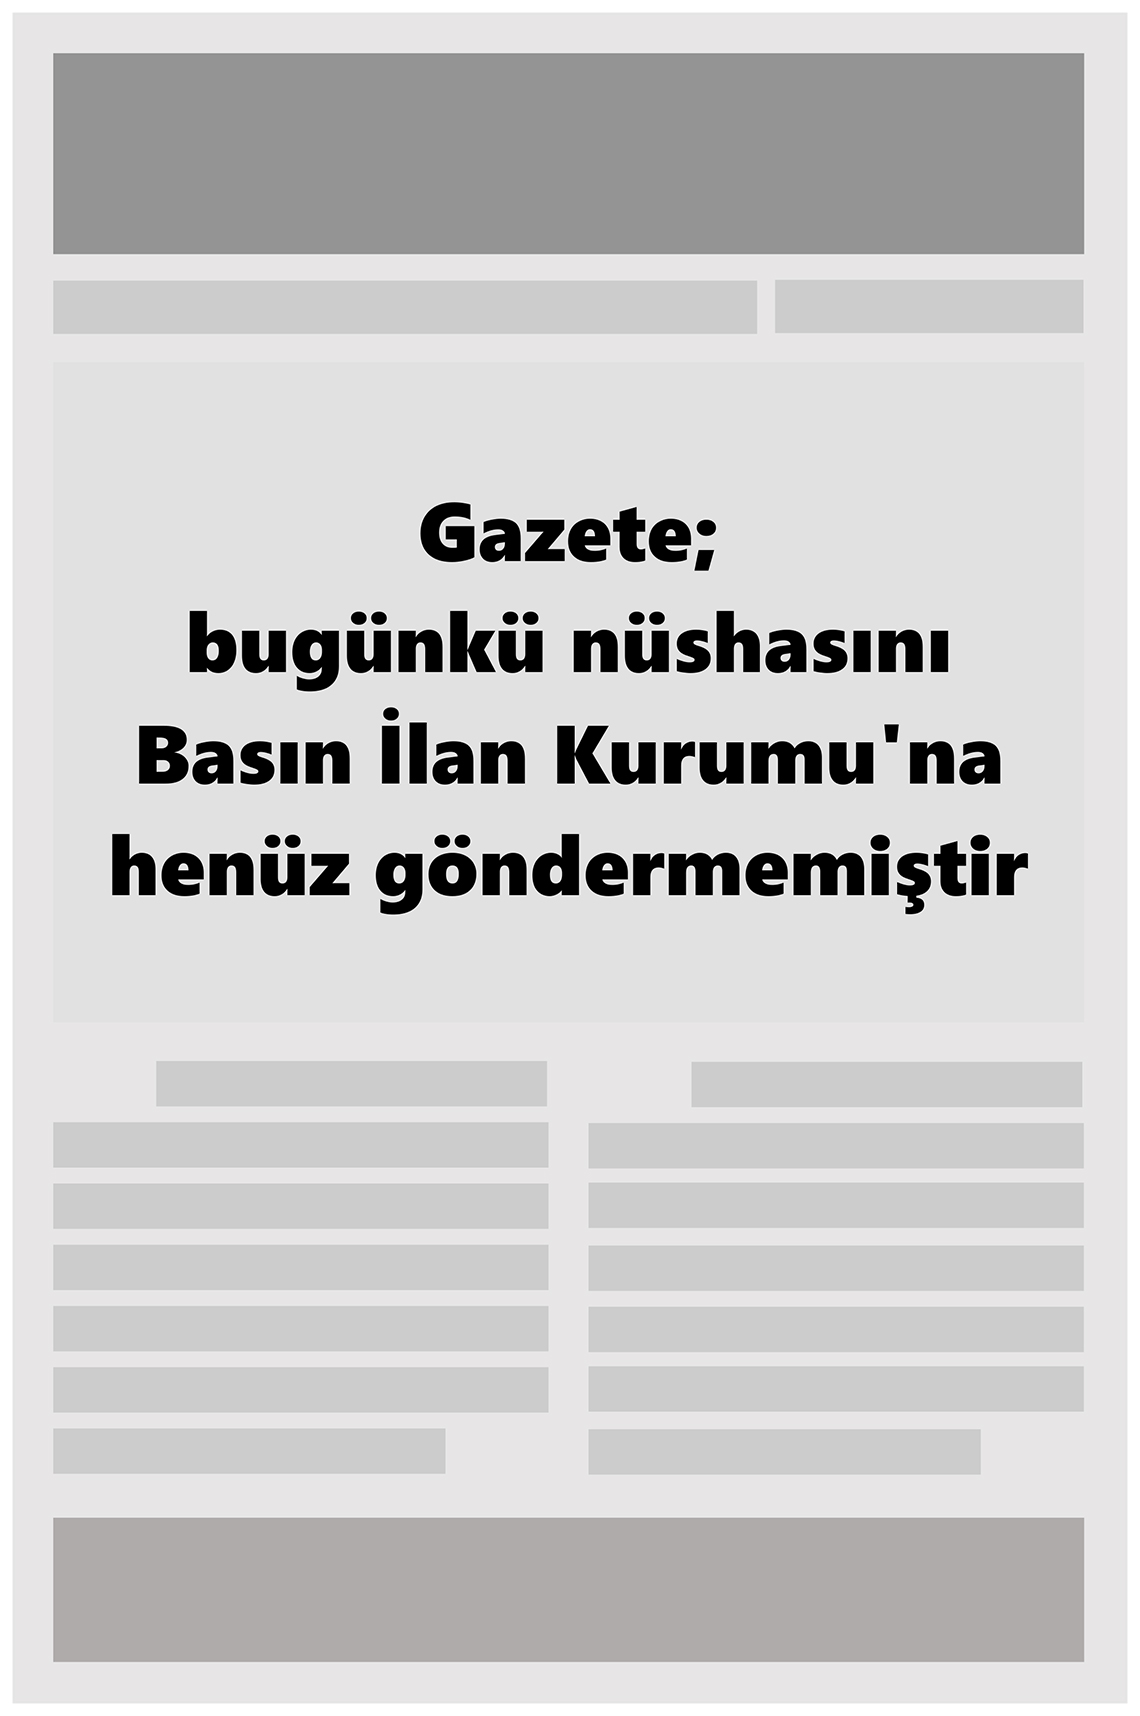 21 Ağustos 2022 Deha 20 Gazete Manşeti